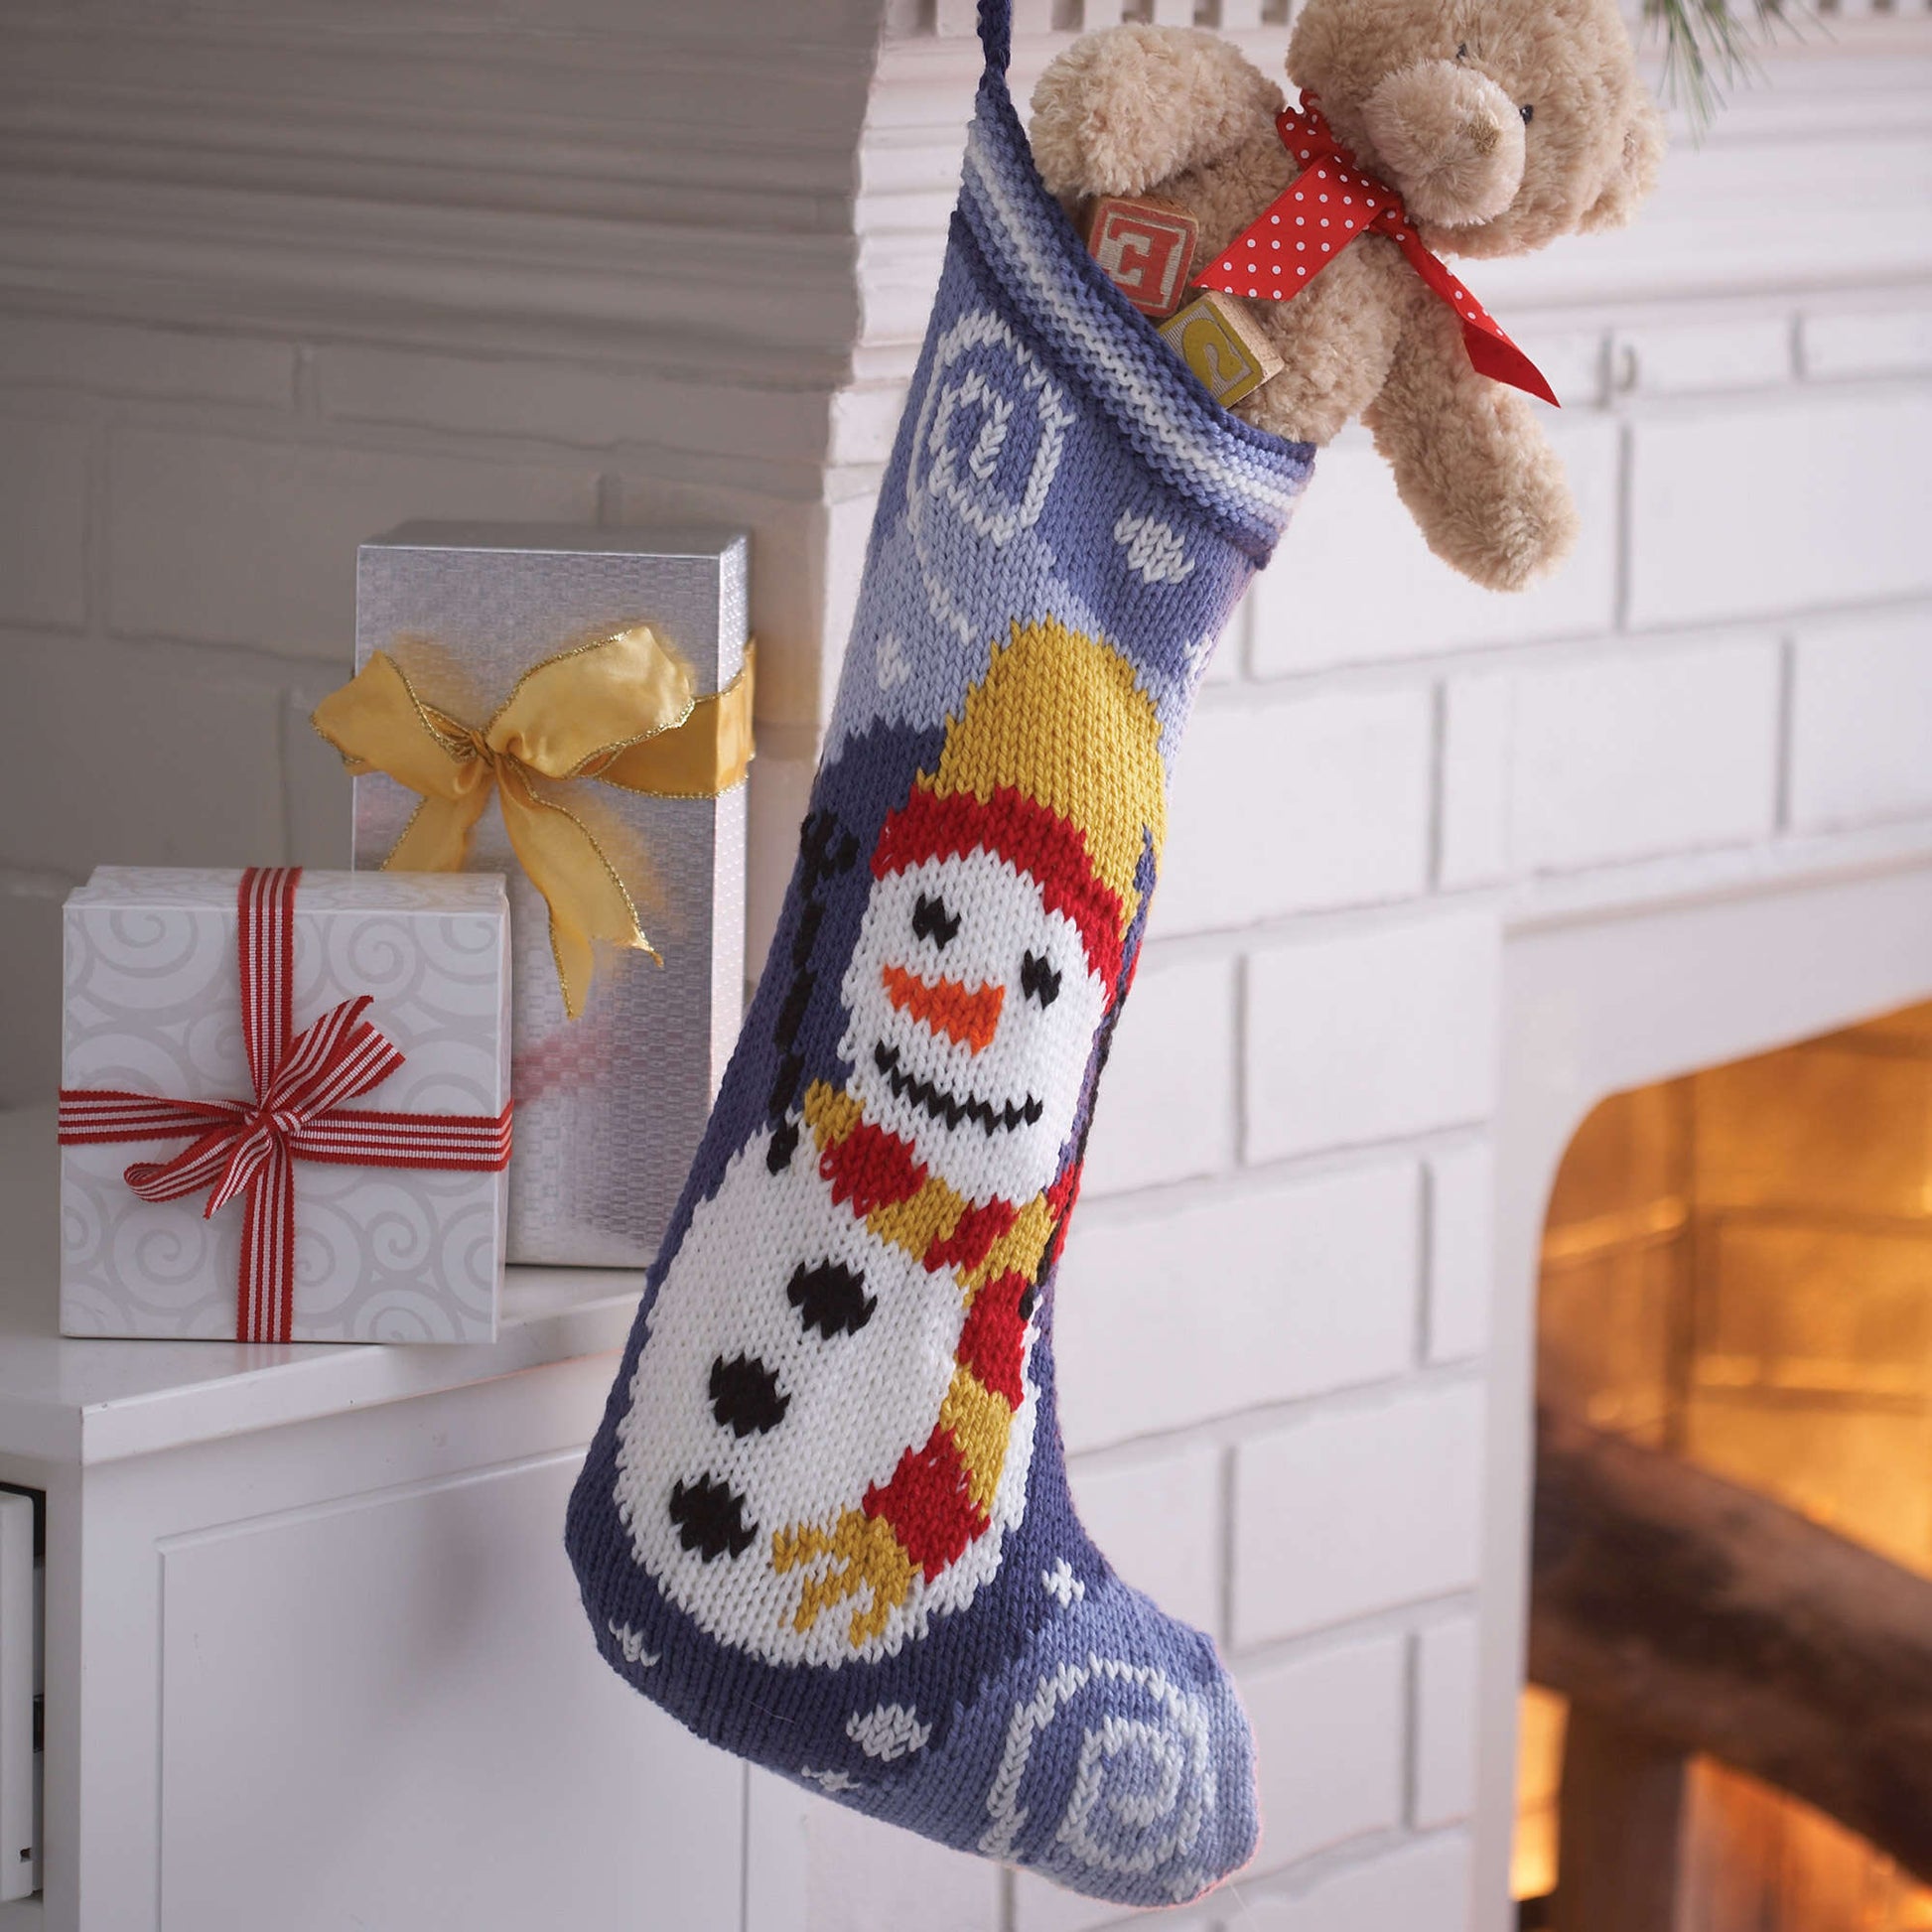 Bernat Snowman Stocking Knit Holiday made in Bernat Super Value yarn